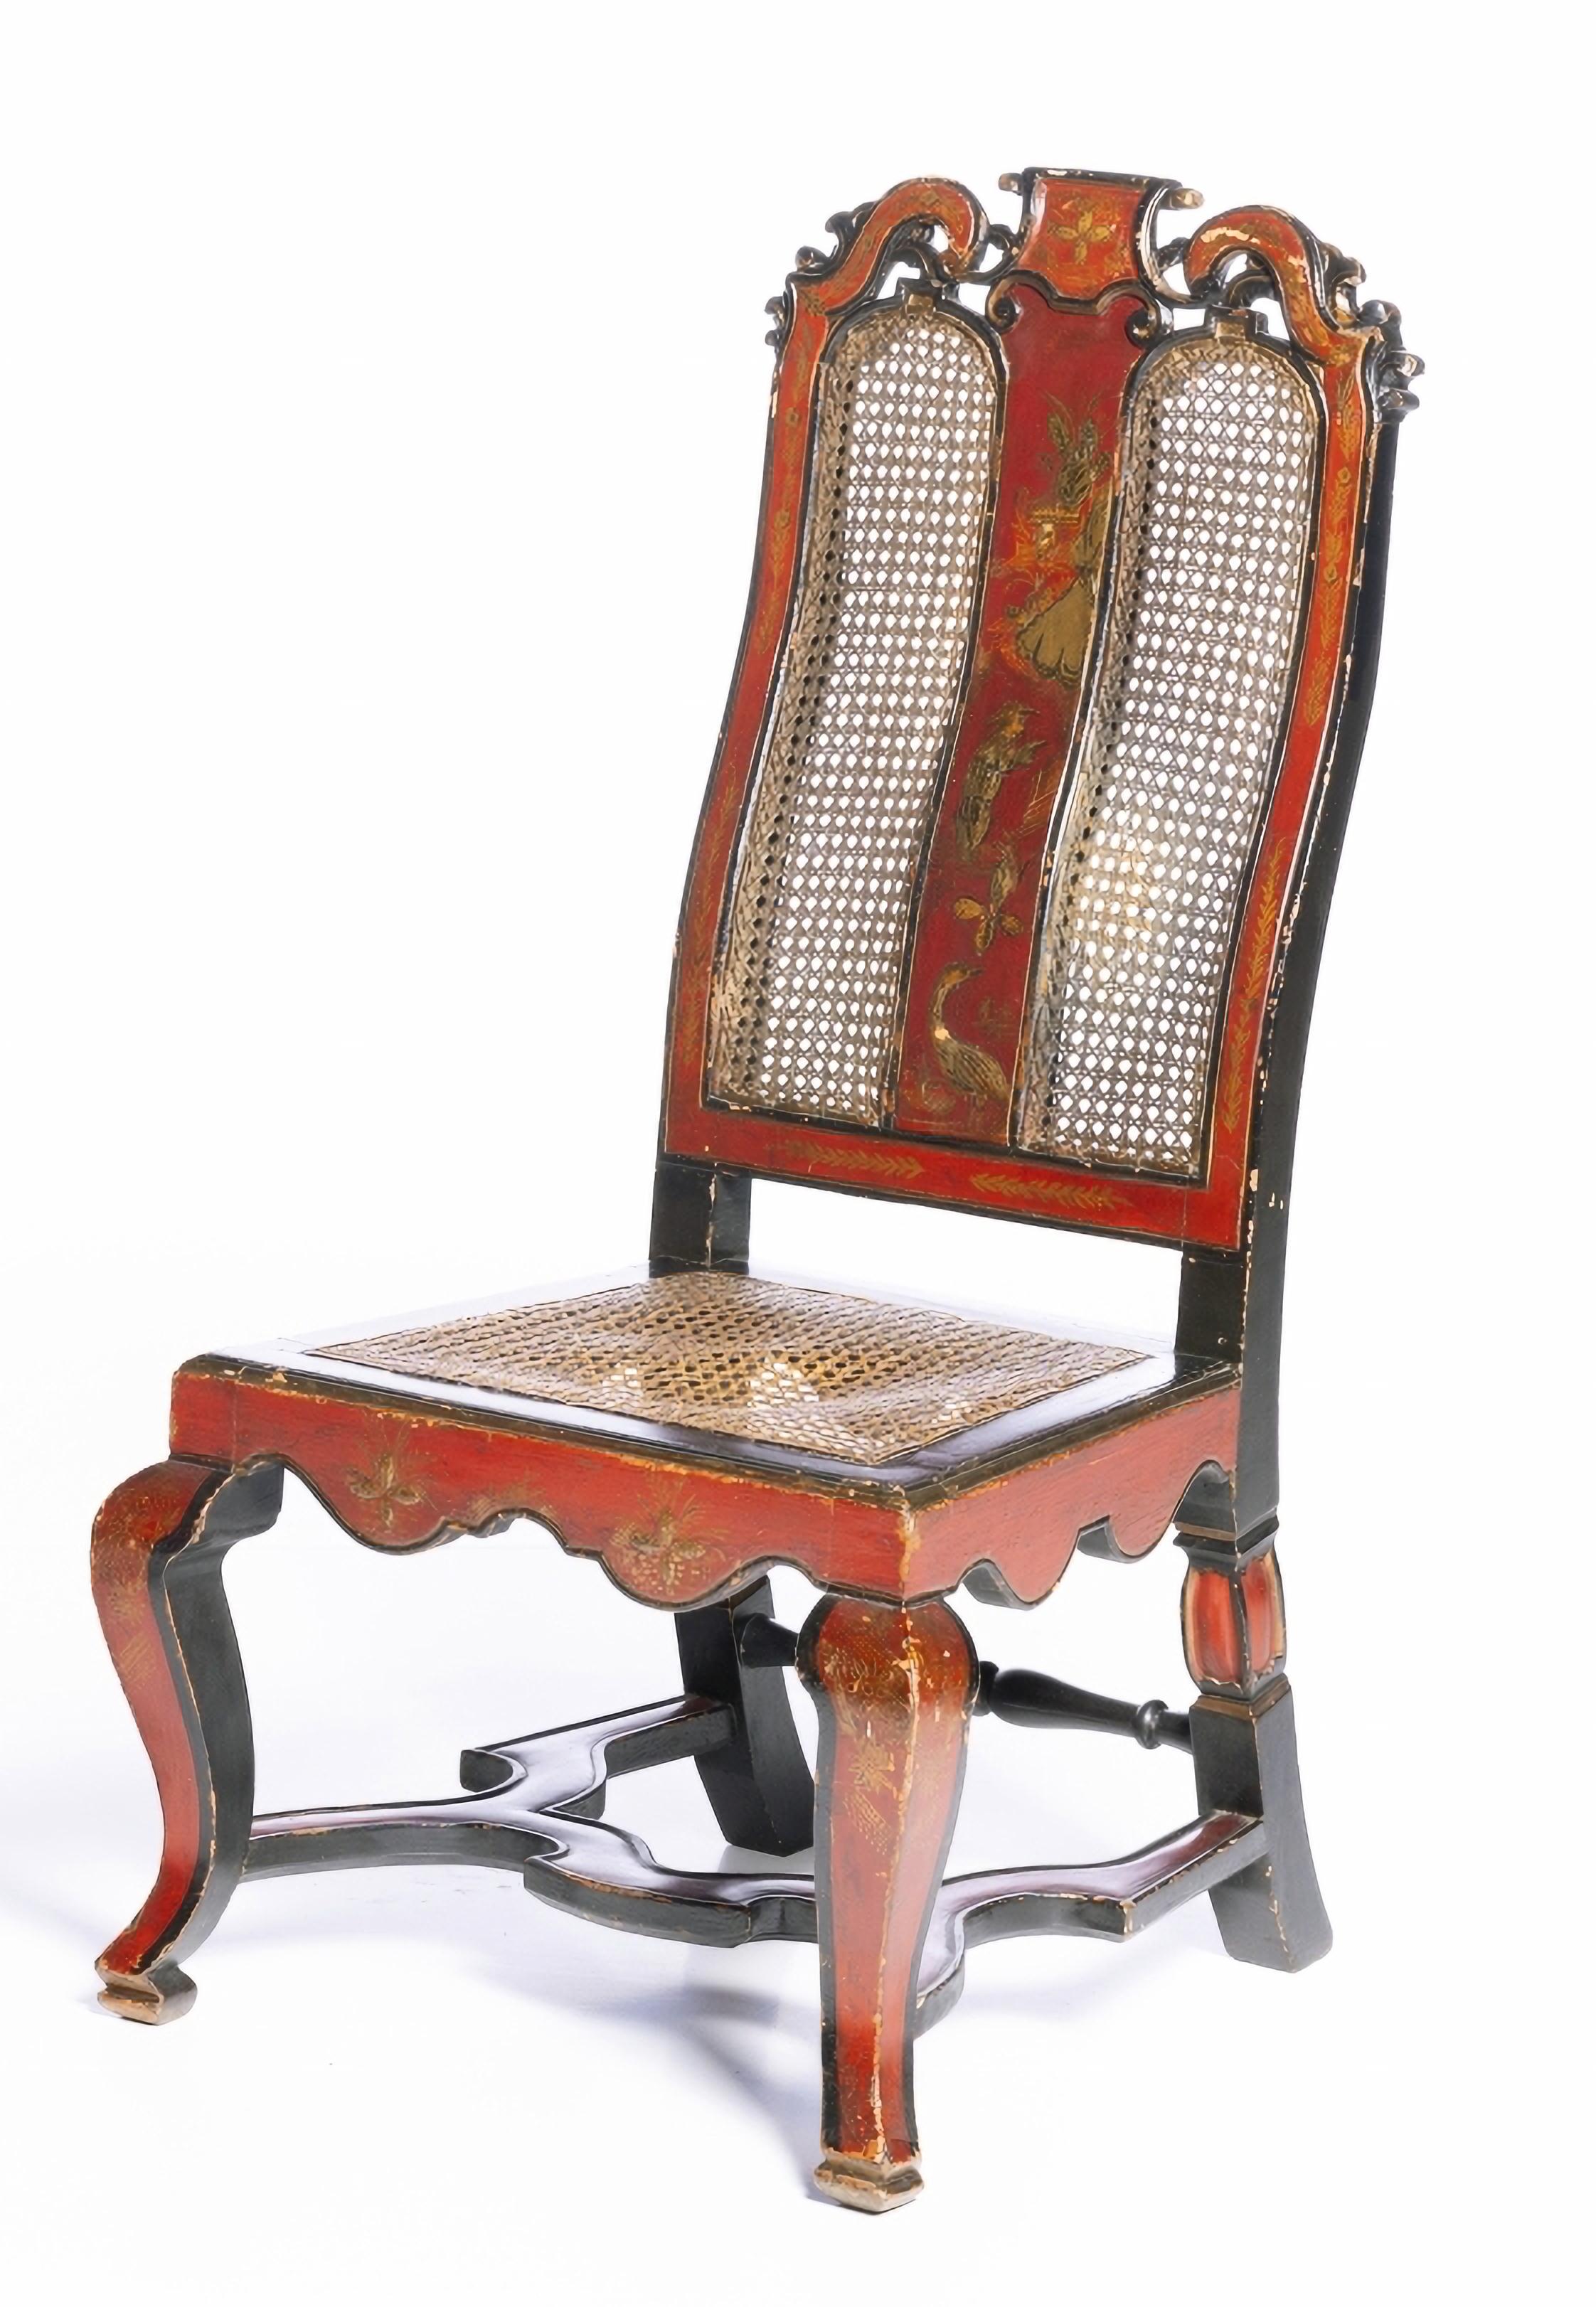 Importante paire de chaises JORGE II

Depuis le 18ème siècle
en laque japonaise, décorée de chinoiseries, de personnages et d'oiseaux.
Dossier et assise en paille.
Défauts de l'âge
Dim. : 90 x 47 x 43 cm
bonnes conditions